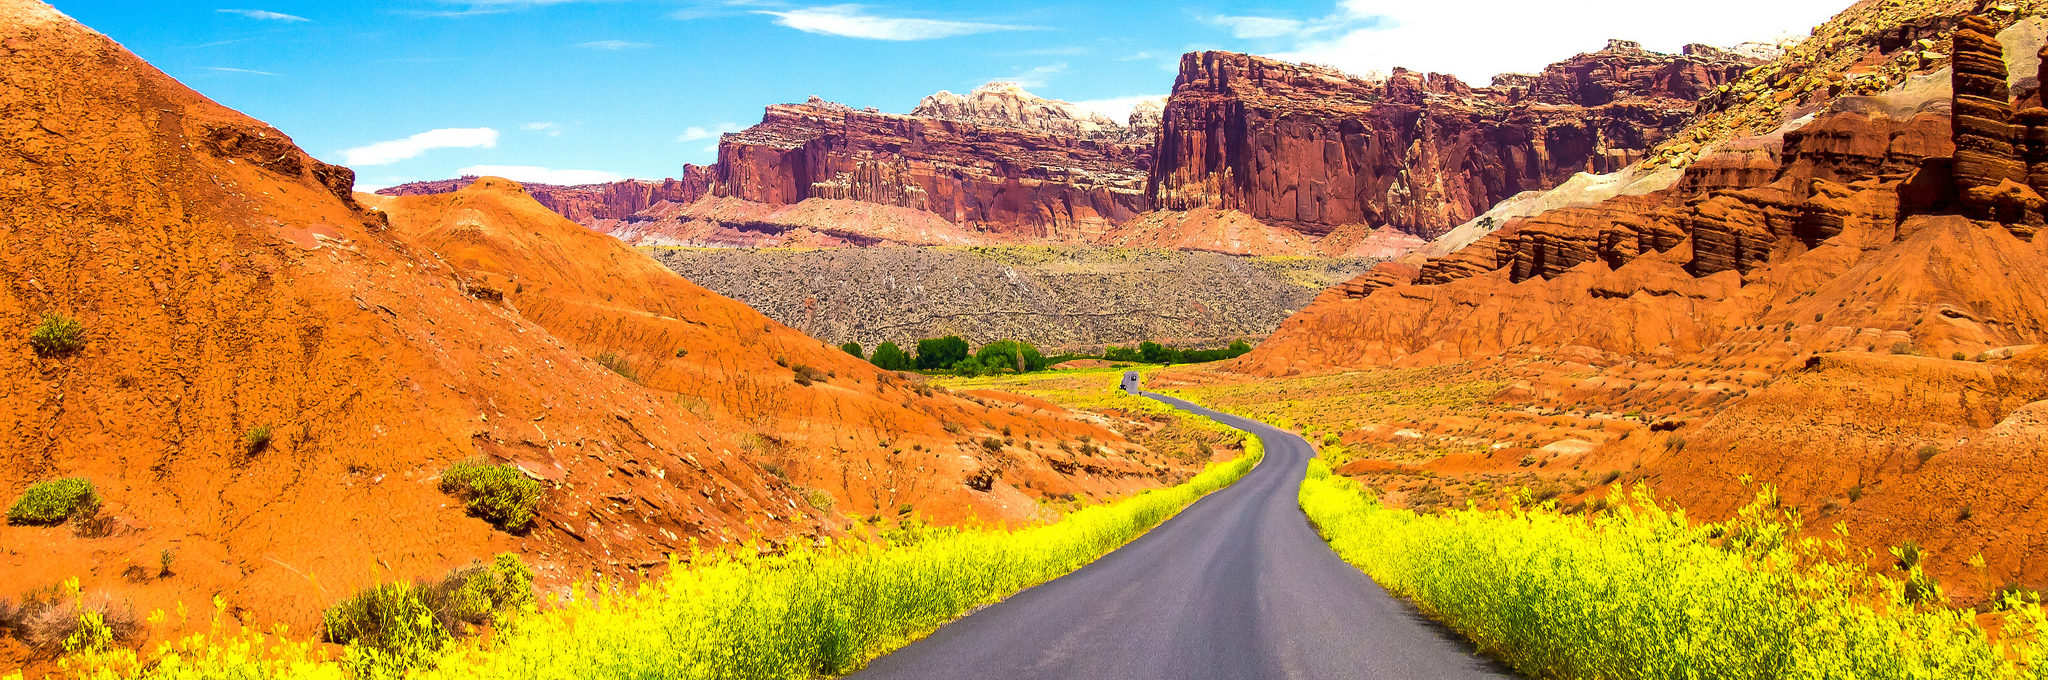 Scenic road in Utah